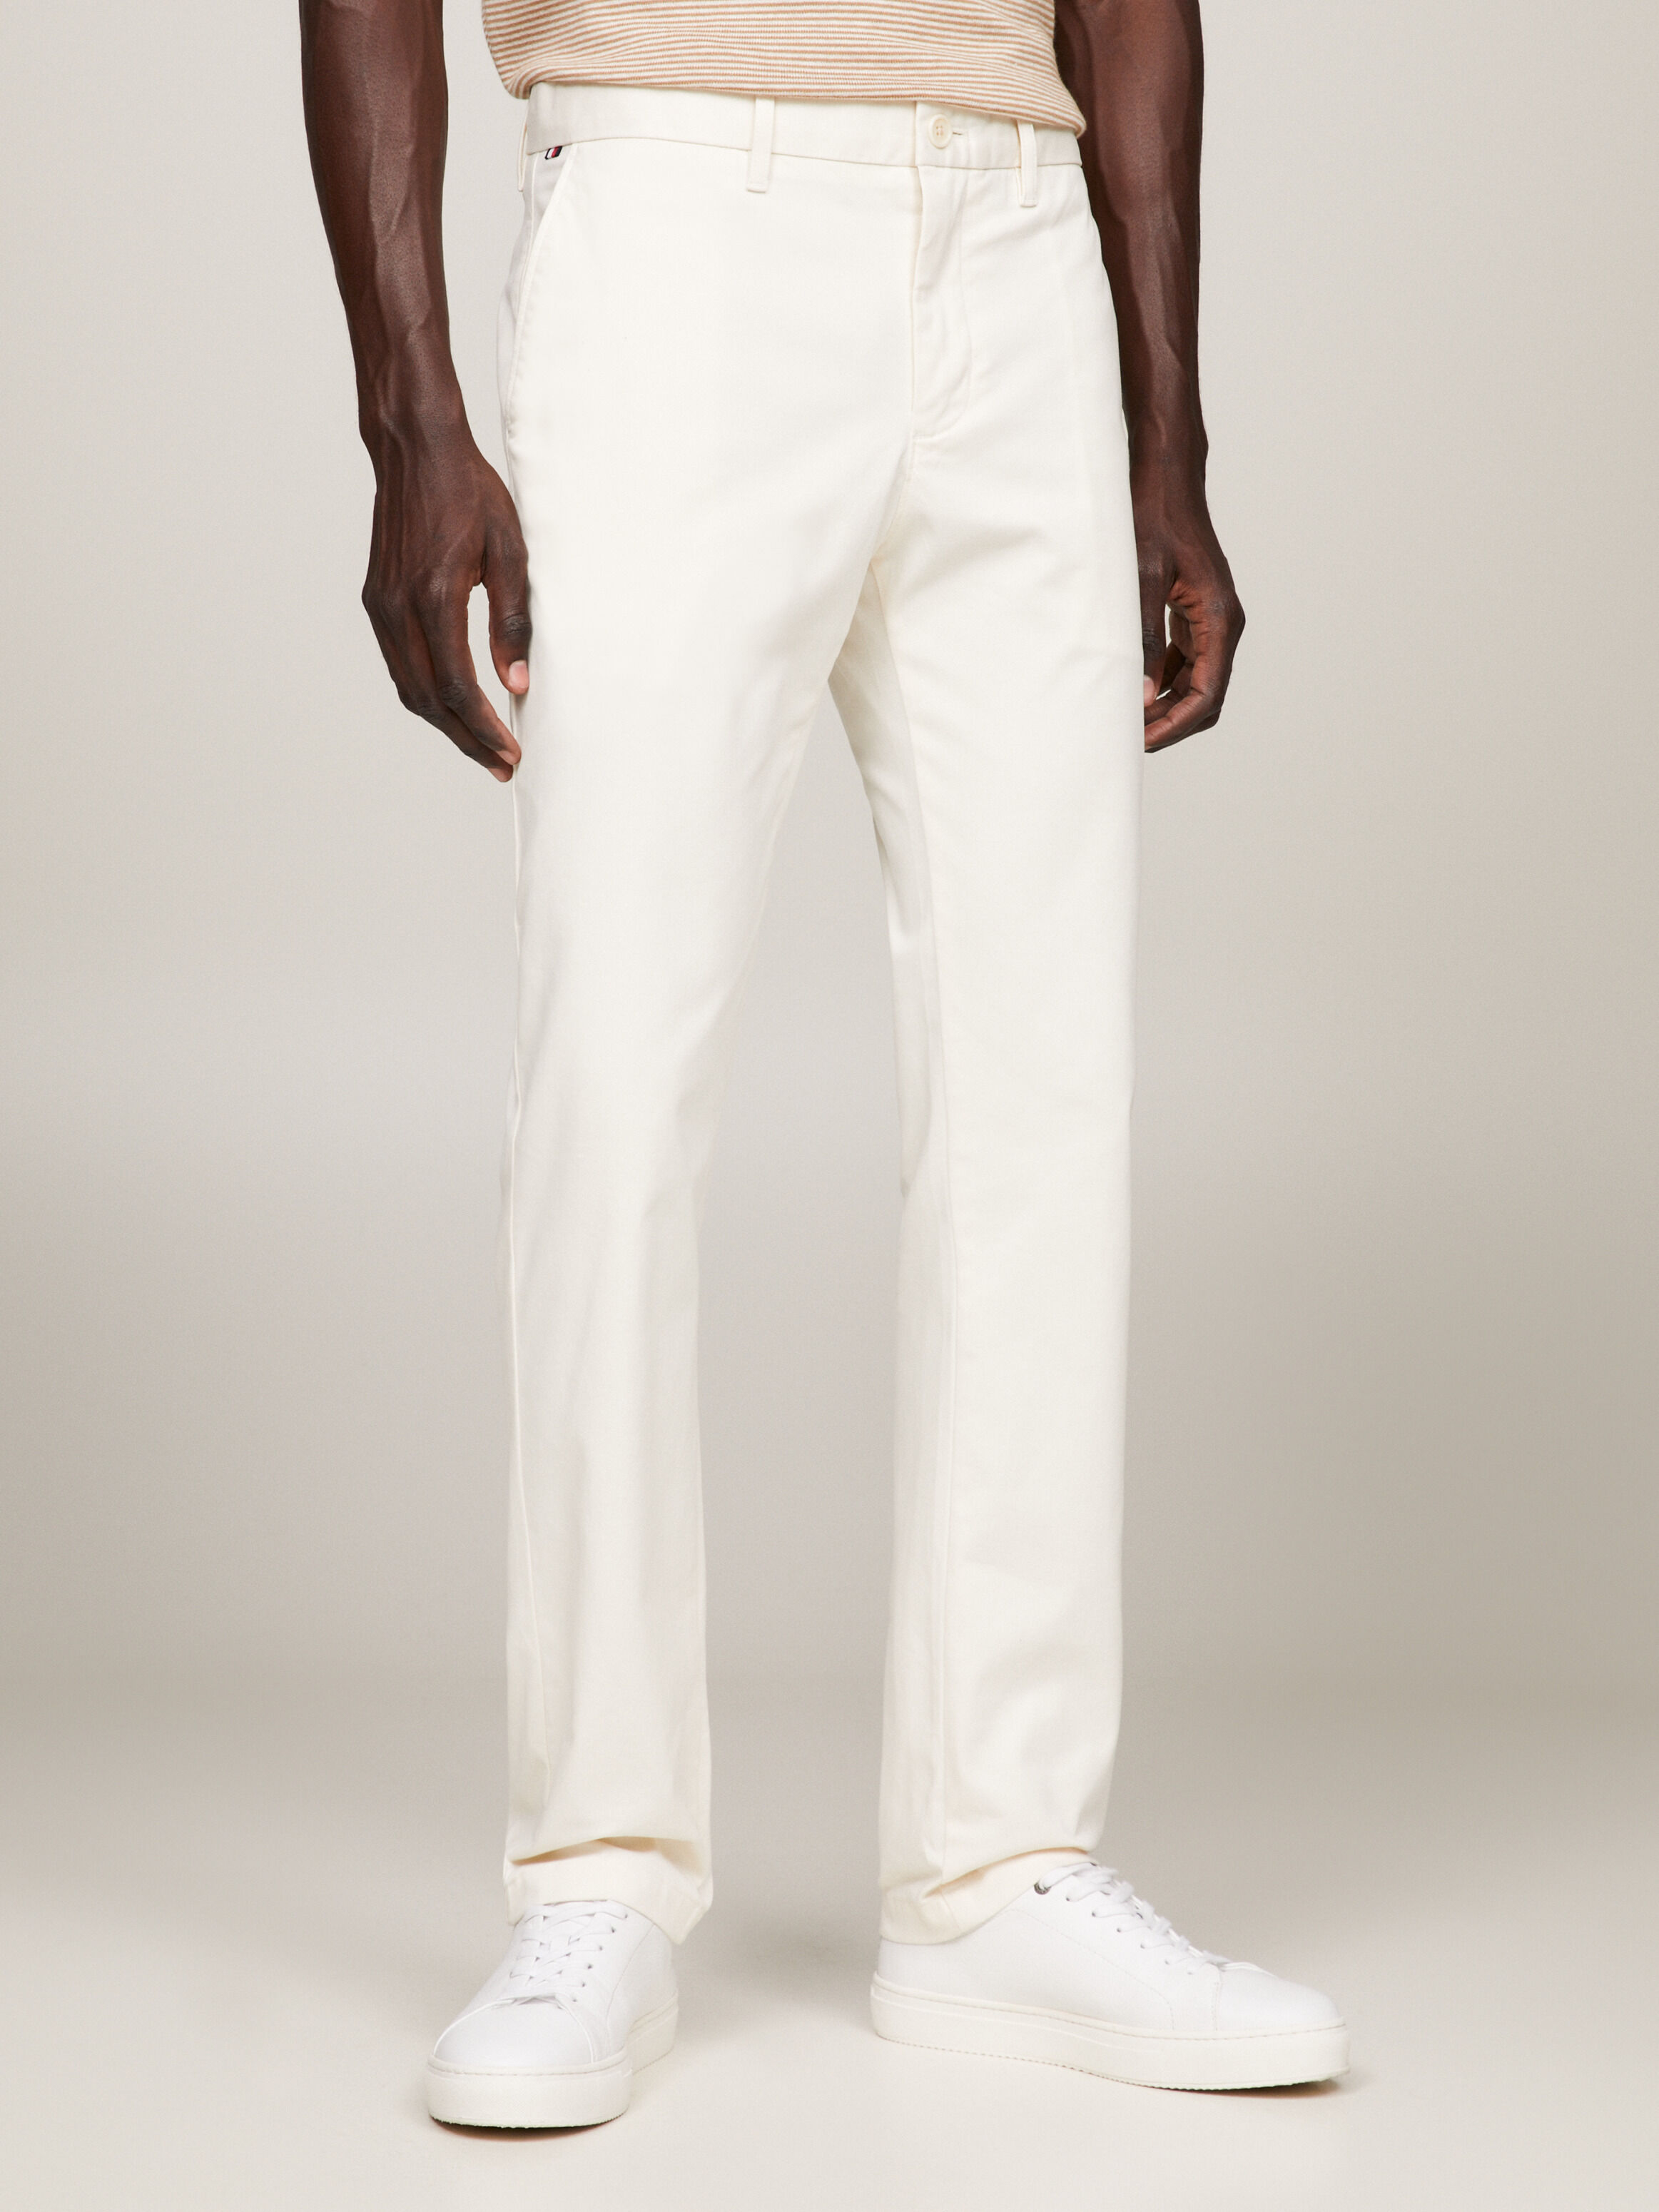 Men's Pants: Chino, Dress & Active Pants | Tommy Bahama